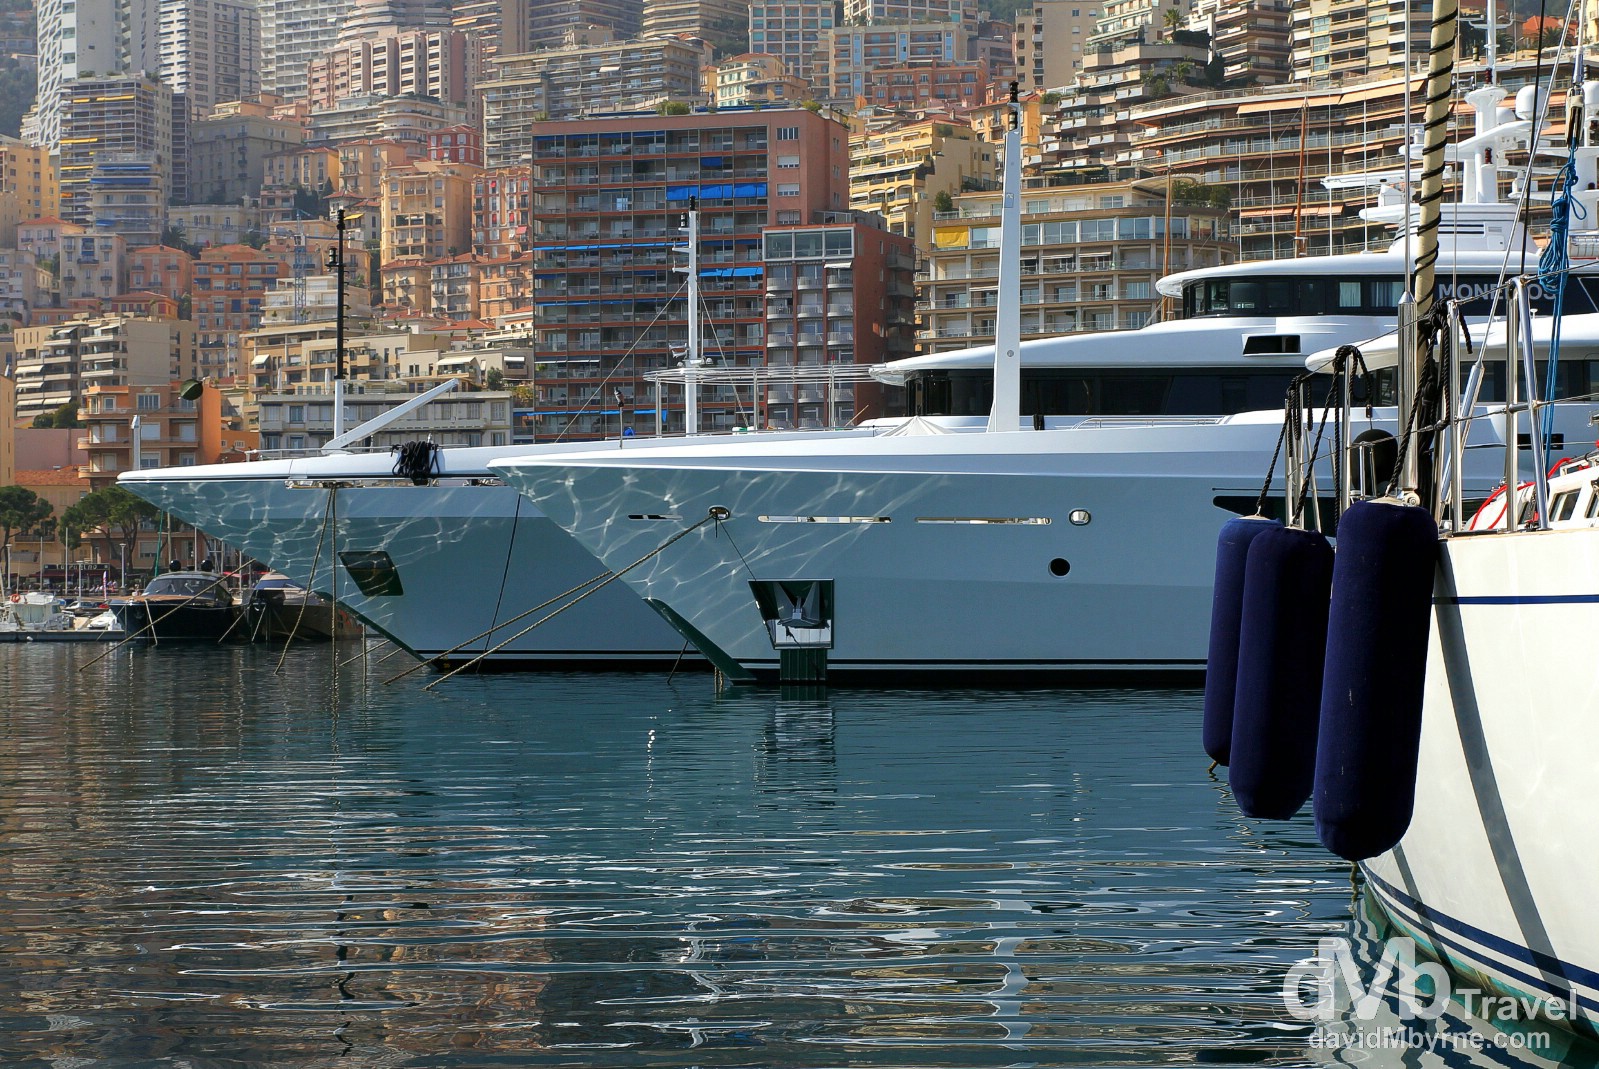 Yachts & pleasure craft in Port de Monaco, Monaco. March 14th, 2014.